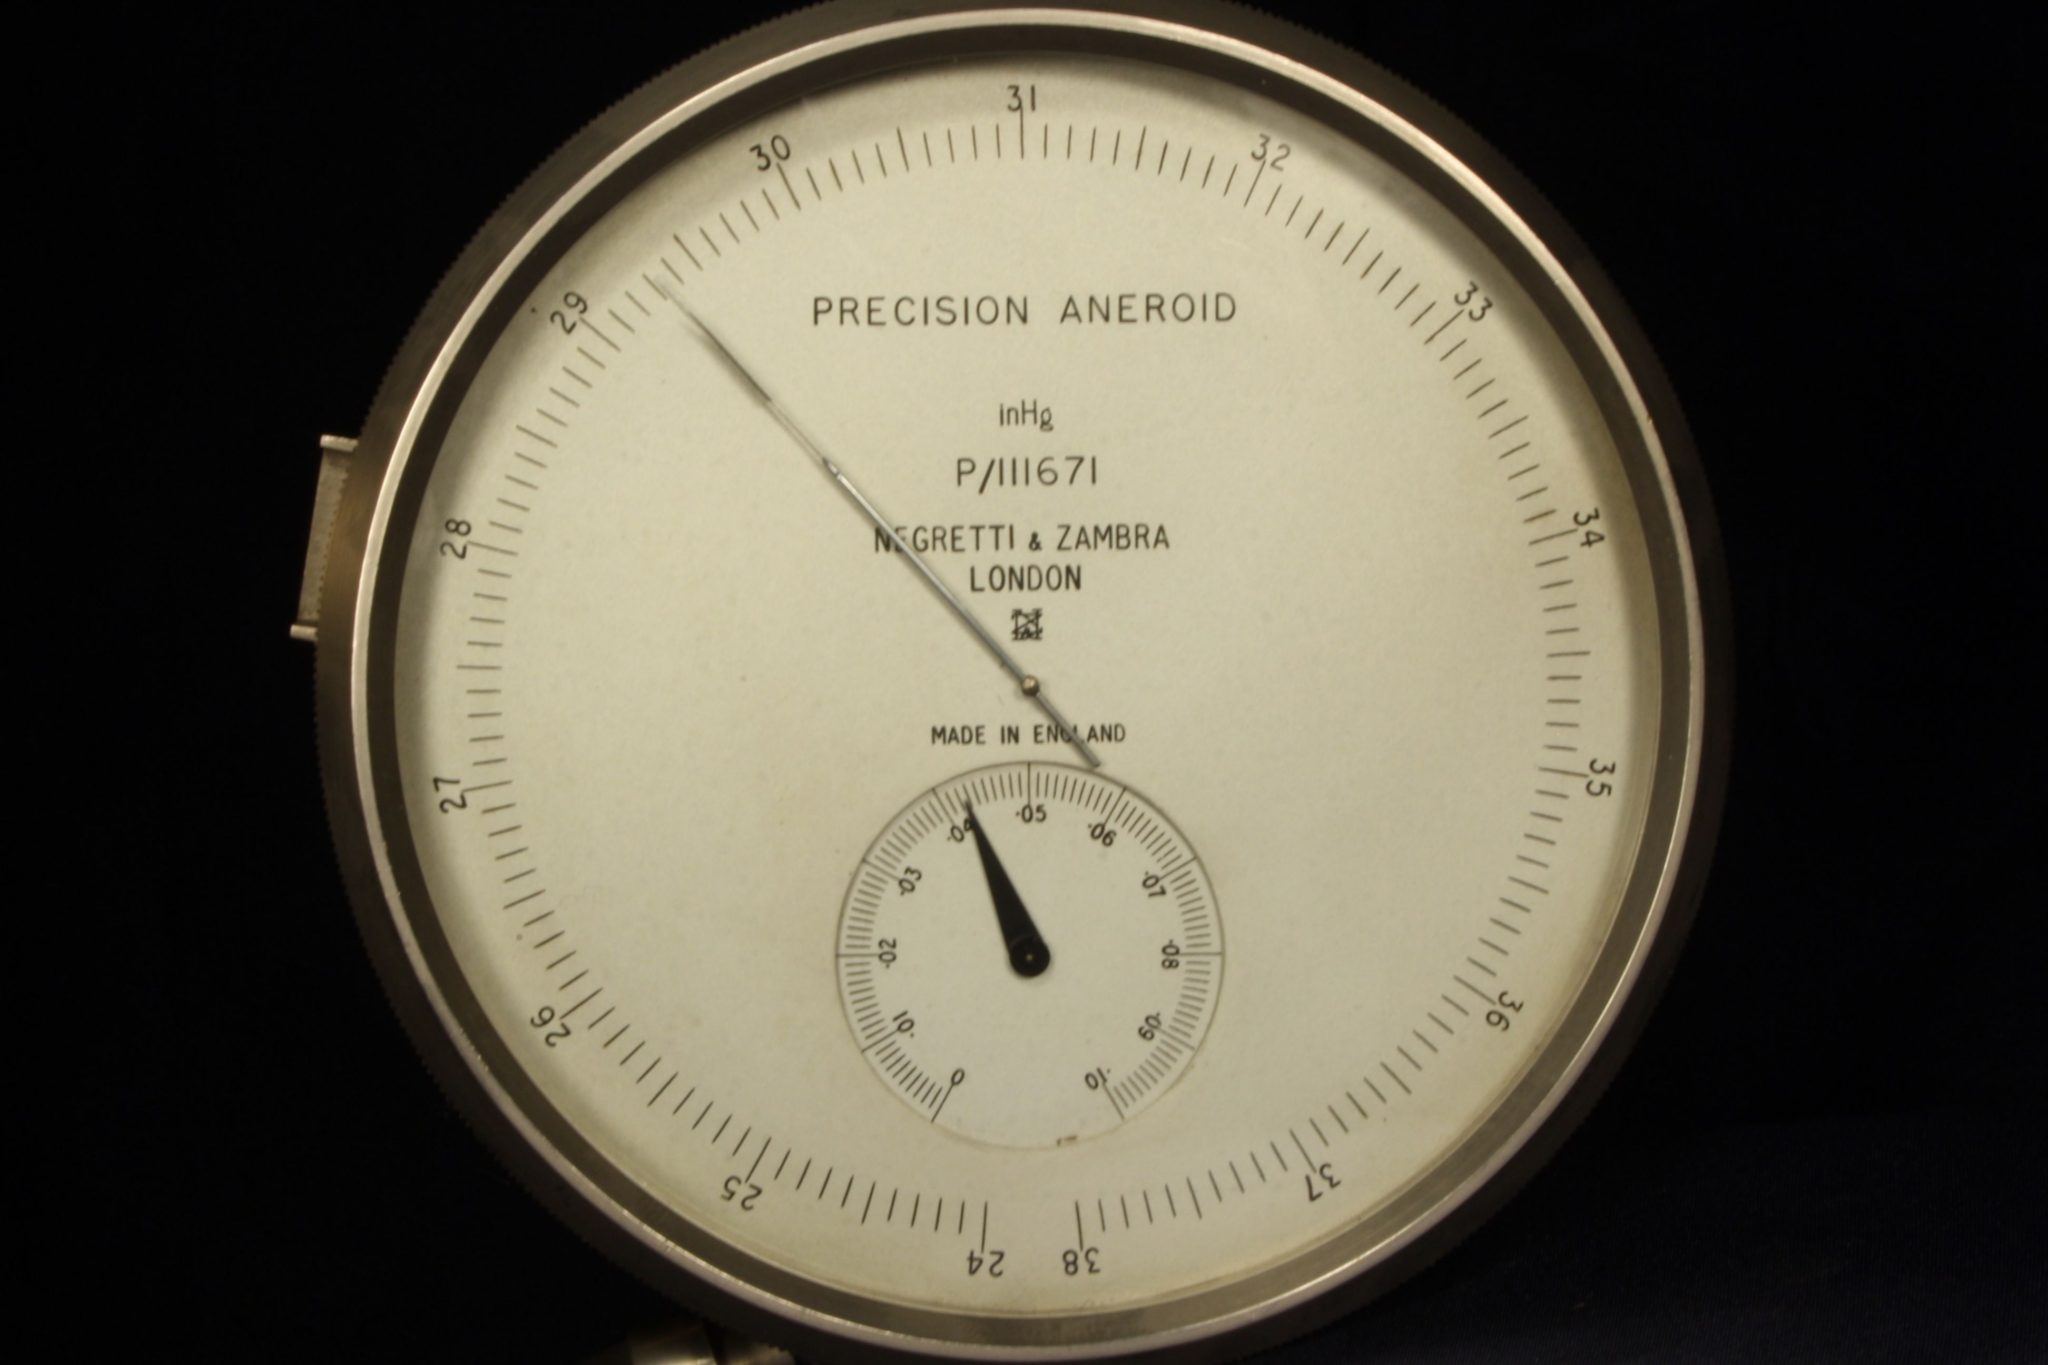 Image of Negretti & Zambra Precision Aneroid Surveying Barometer P/111671